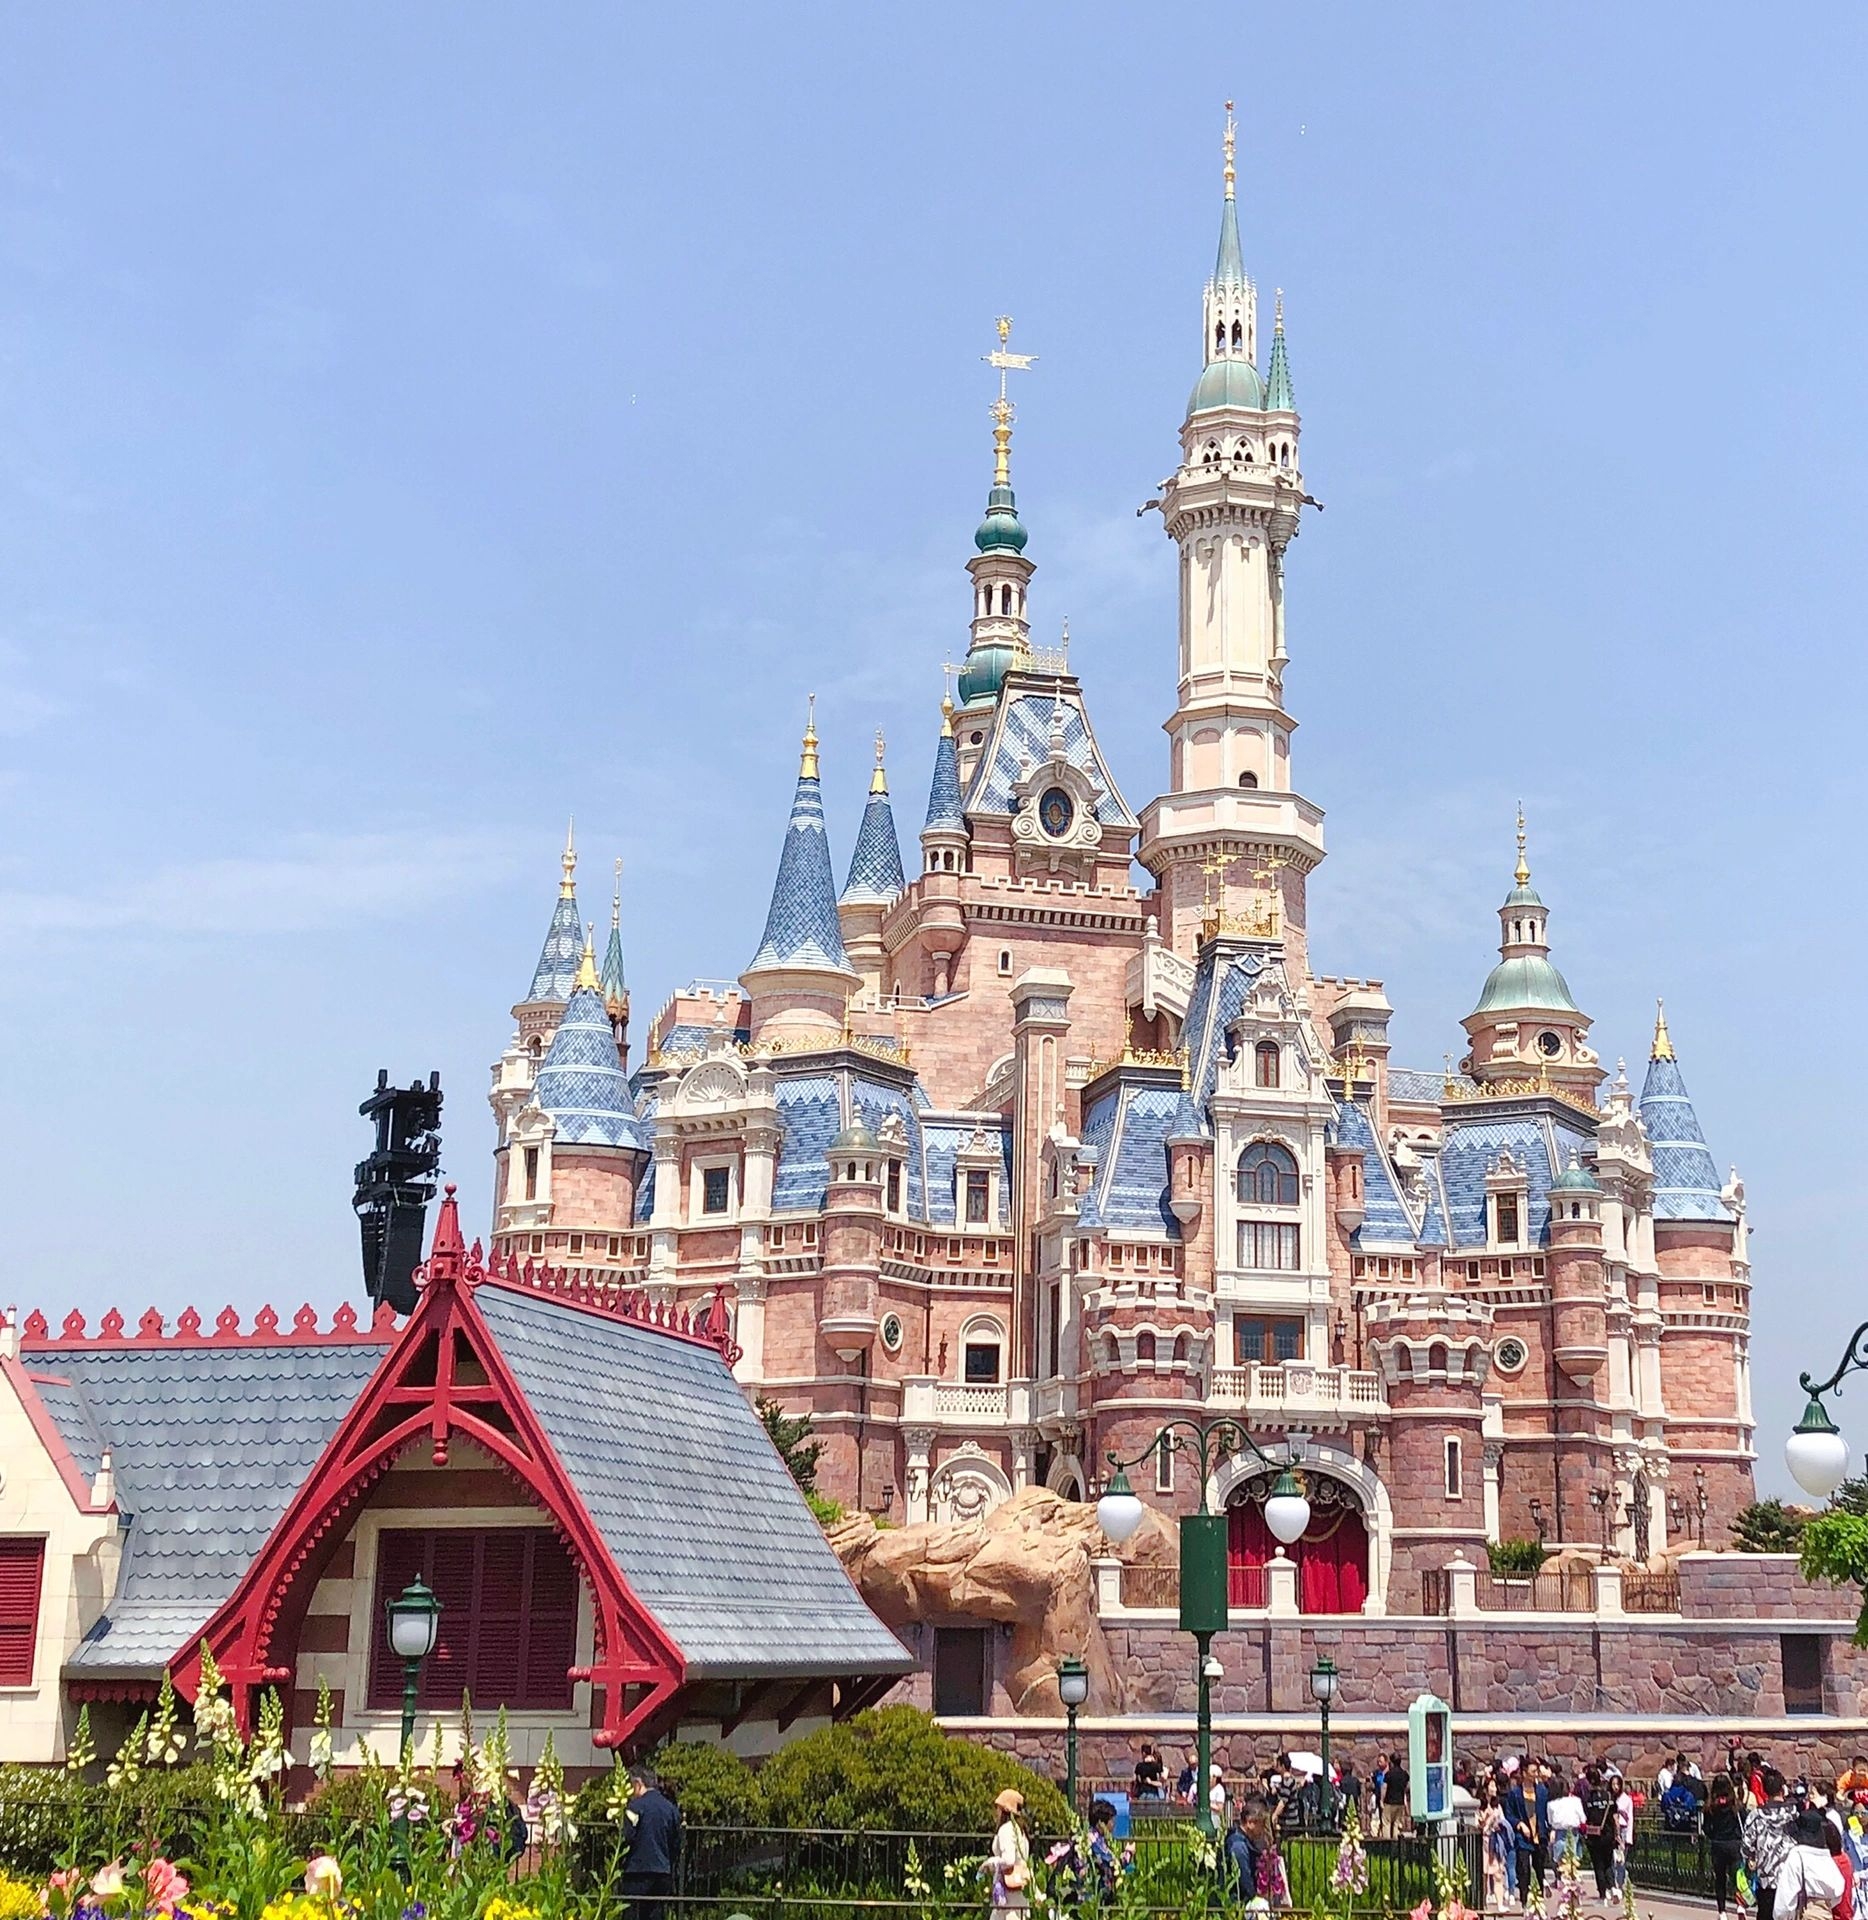 上海迪士尼|||原来这几年拍了这么多城堡的照片 忘早日解放 水晶用户又可以了 迪士尼在逃人员要回家 